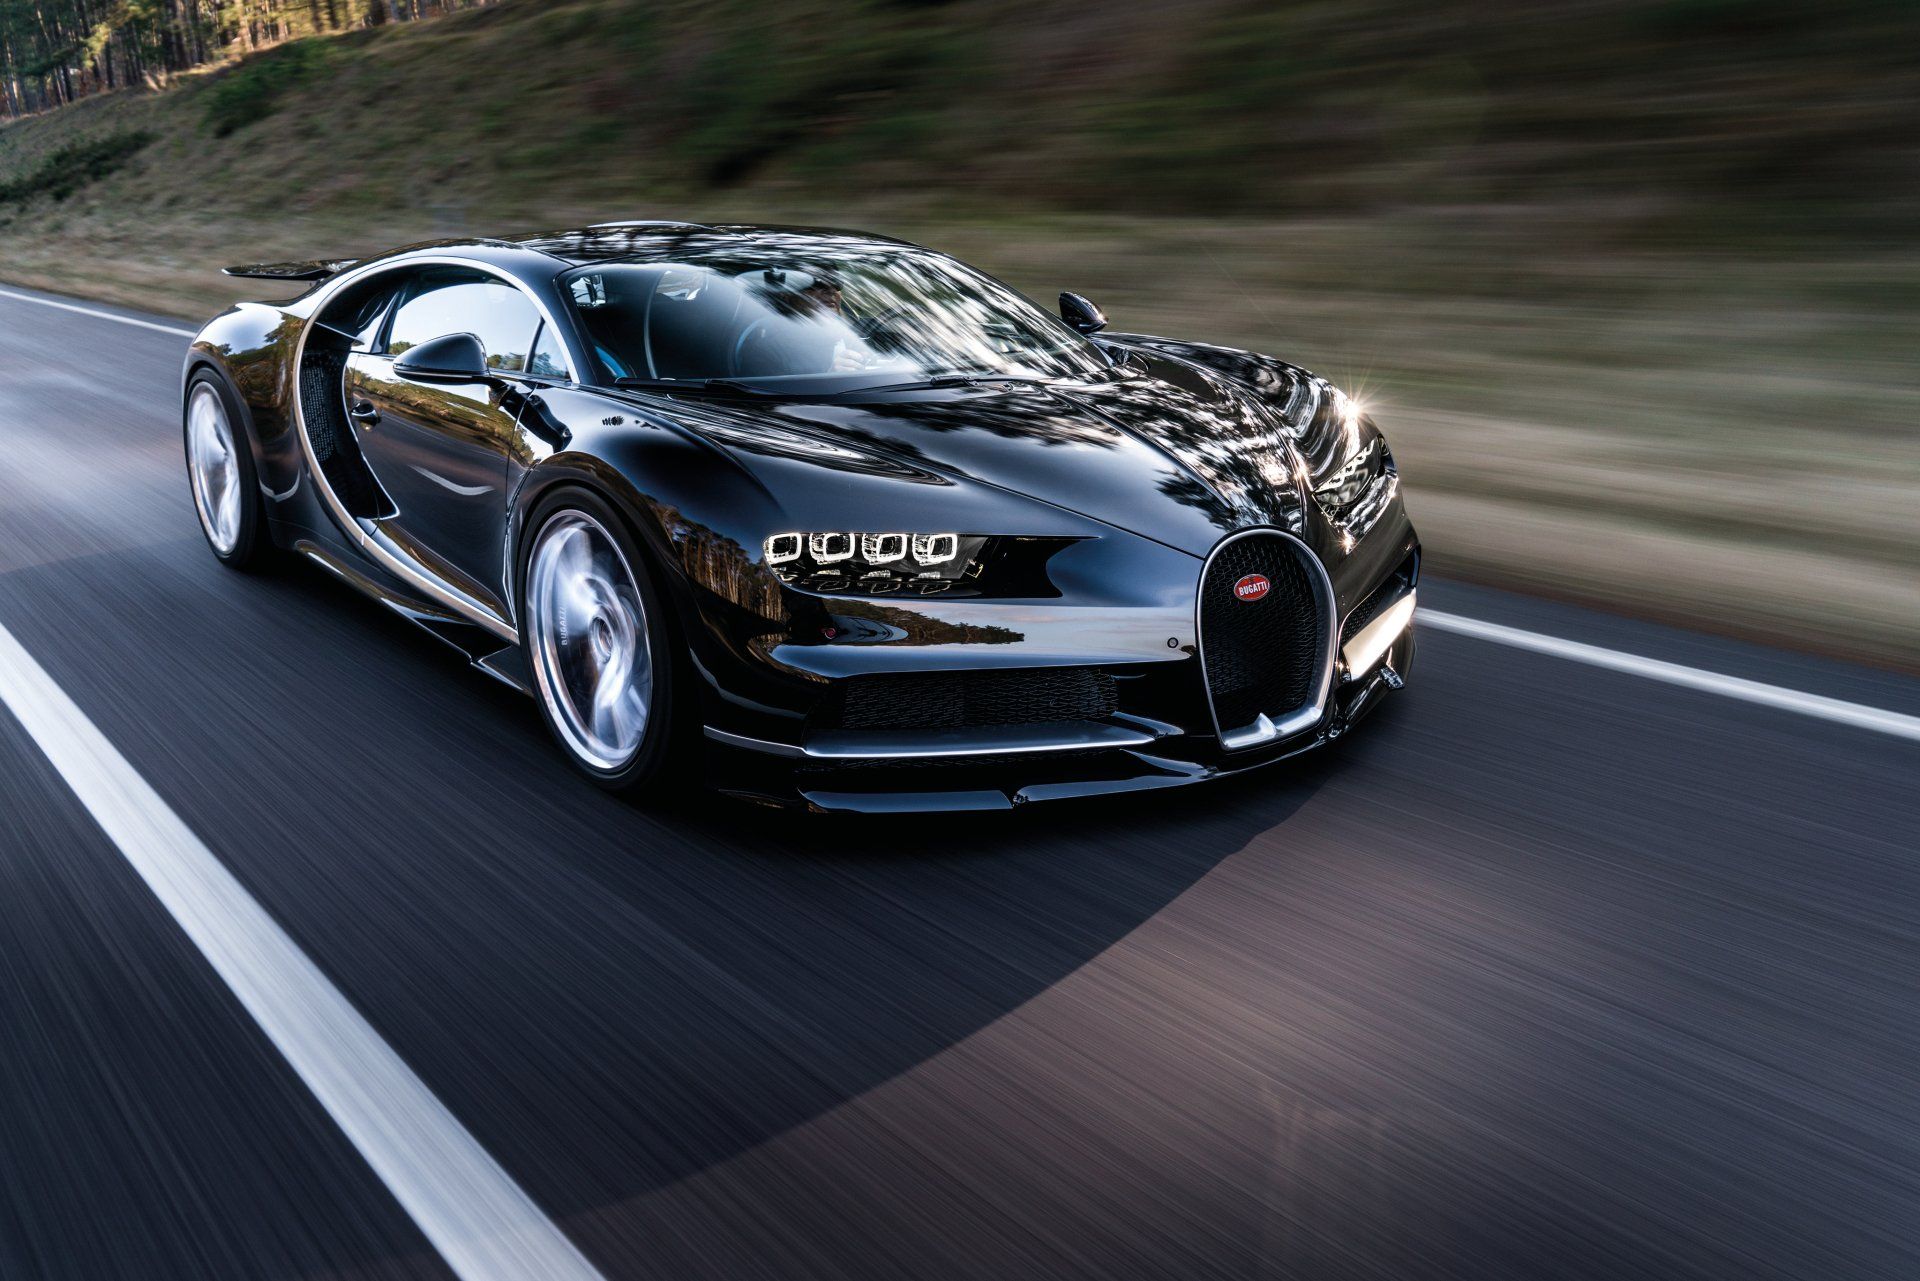 Bugatti Chiron HD Wallpaper and Background Image